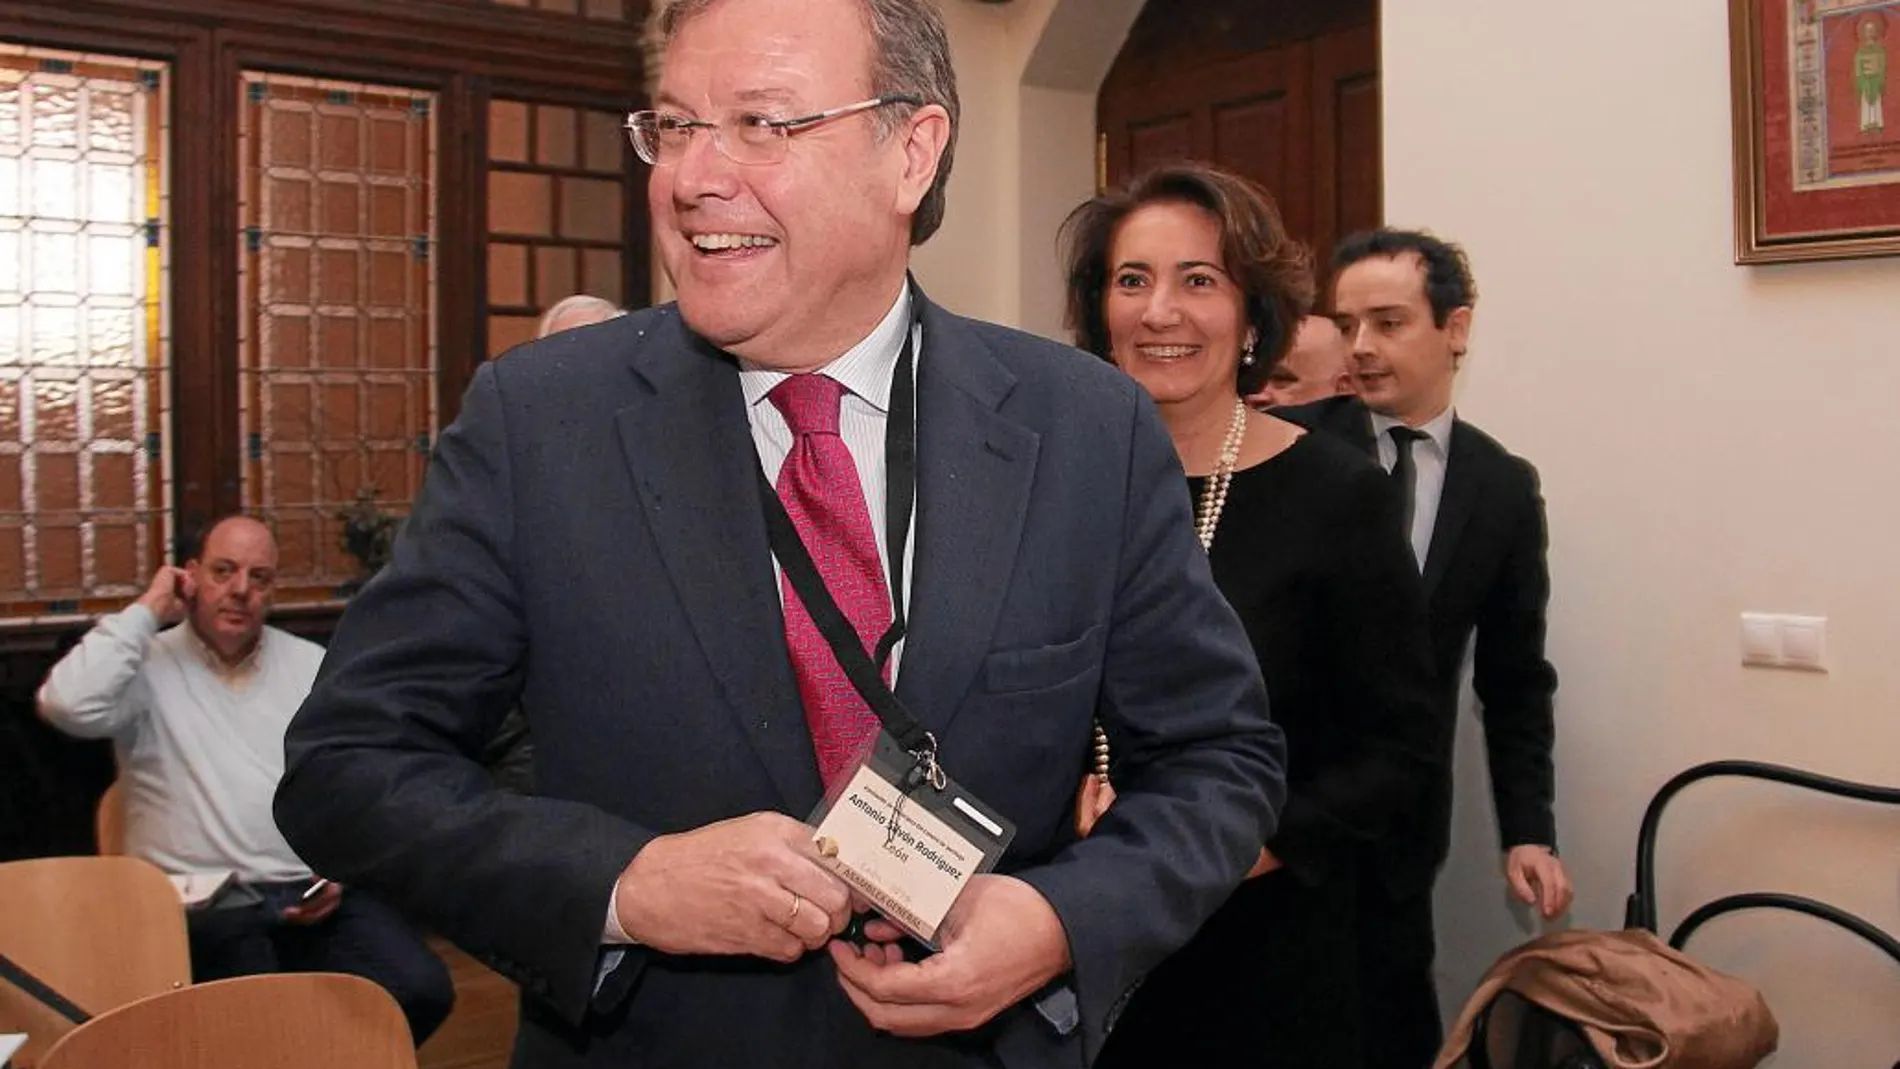 El alcalde de León, Antonio Silván, a su llegada a la asamblea en compañía de la consejera María Josefa García-Cirac